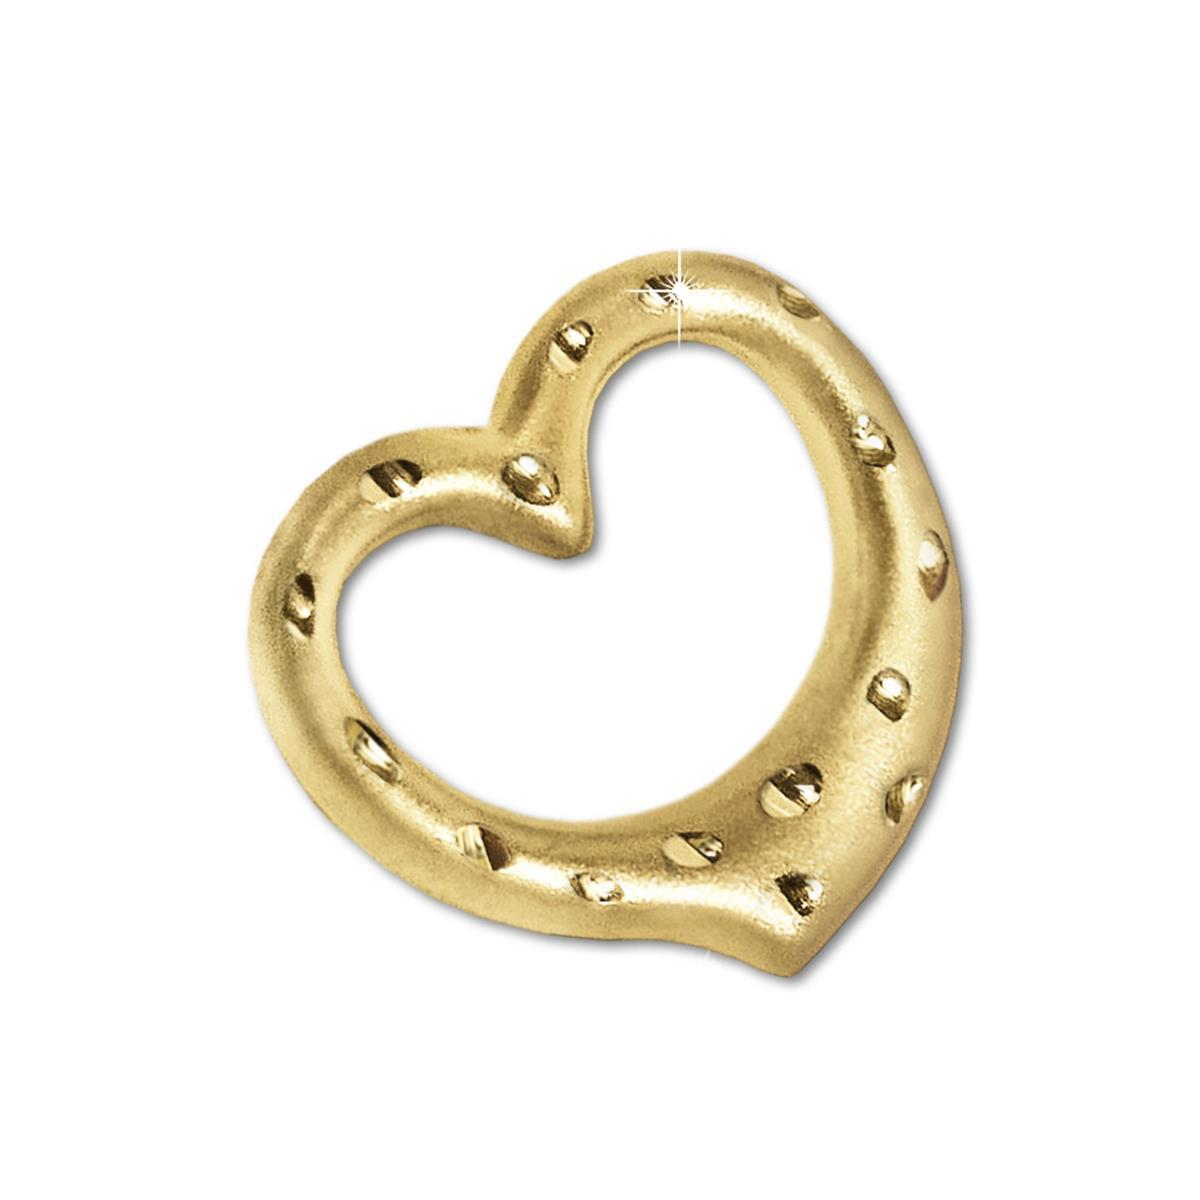 Goldener Anhänger Herz 12 mm plastische Form seidenmatt diamantiertes Pünktchenmuster 333 GOLD 8 KARAT